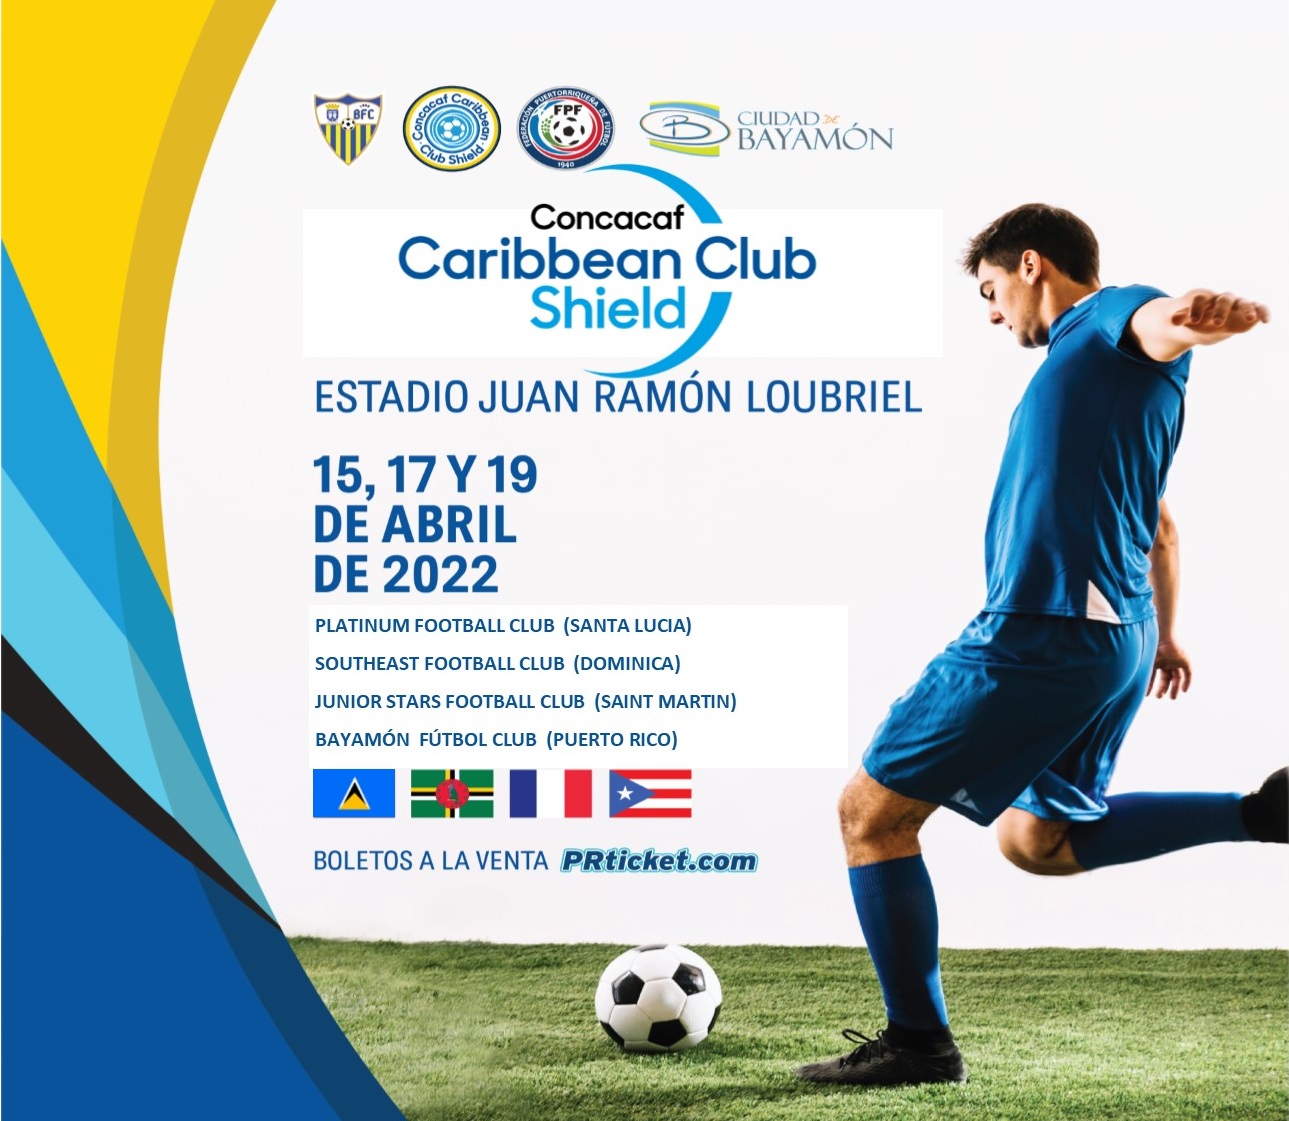 Concacaf Caribbean Club Shield del 15,17 y 19 de abril en el Estadio Juan Ramon Loubriel